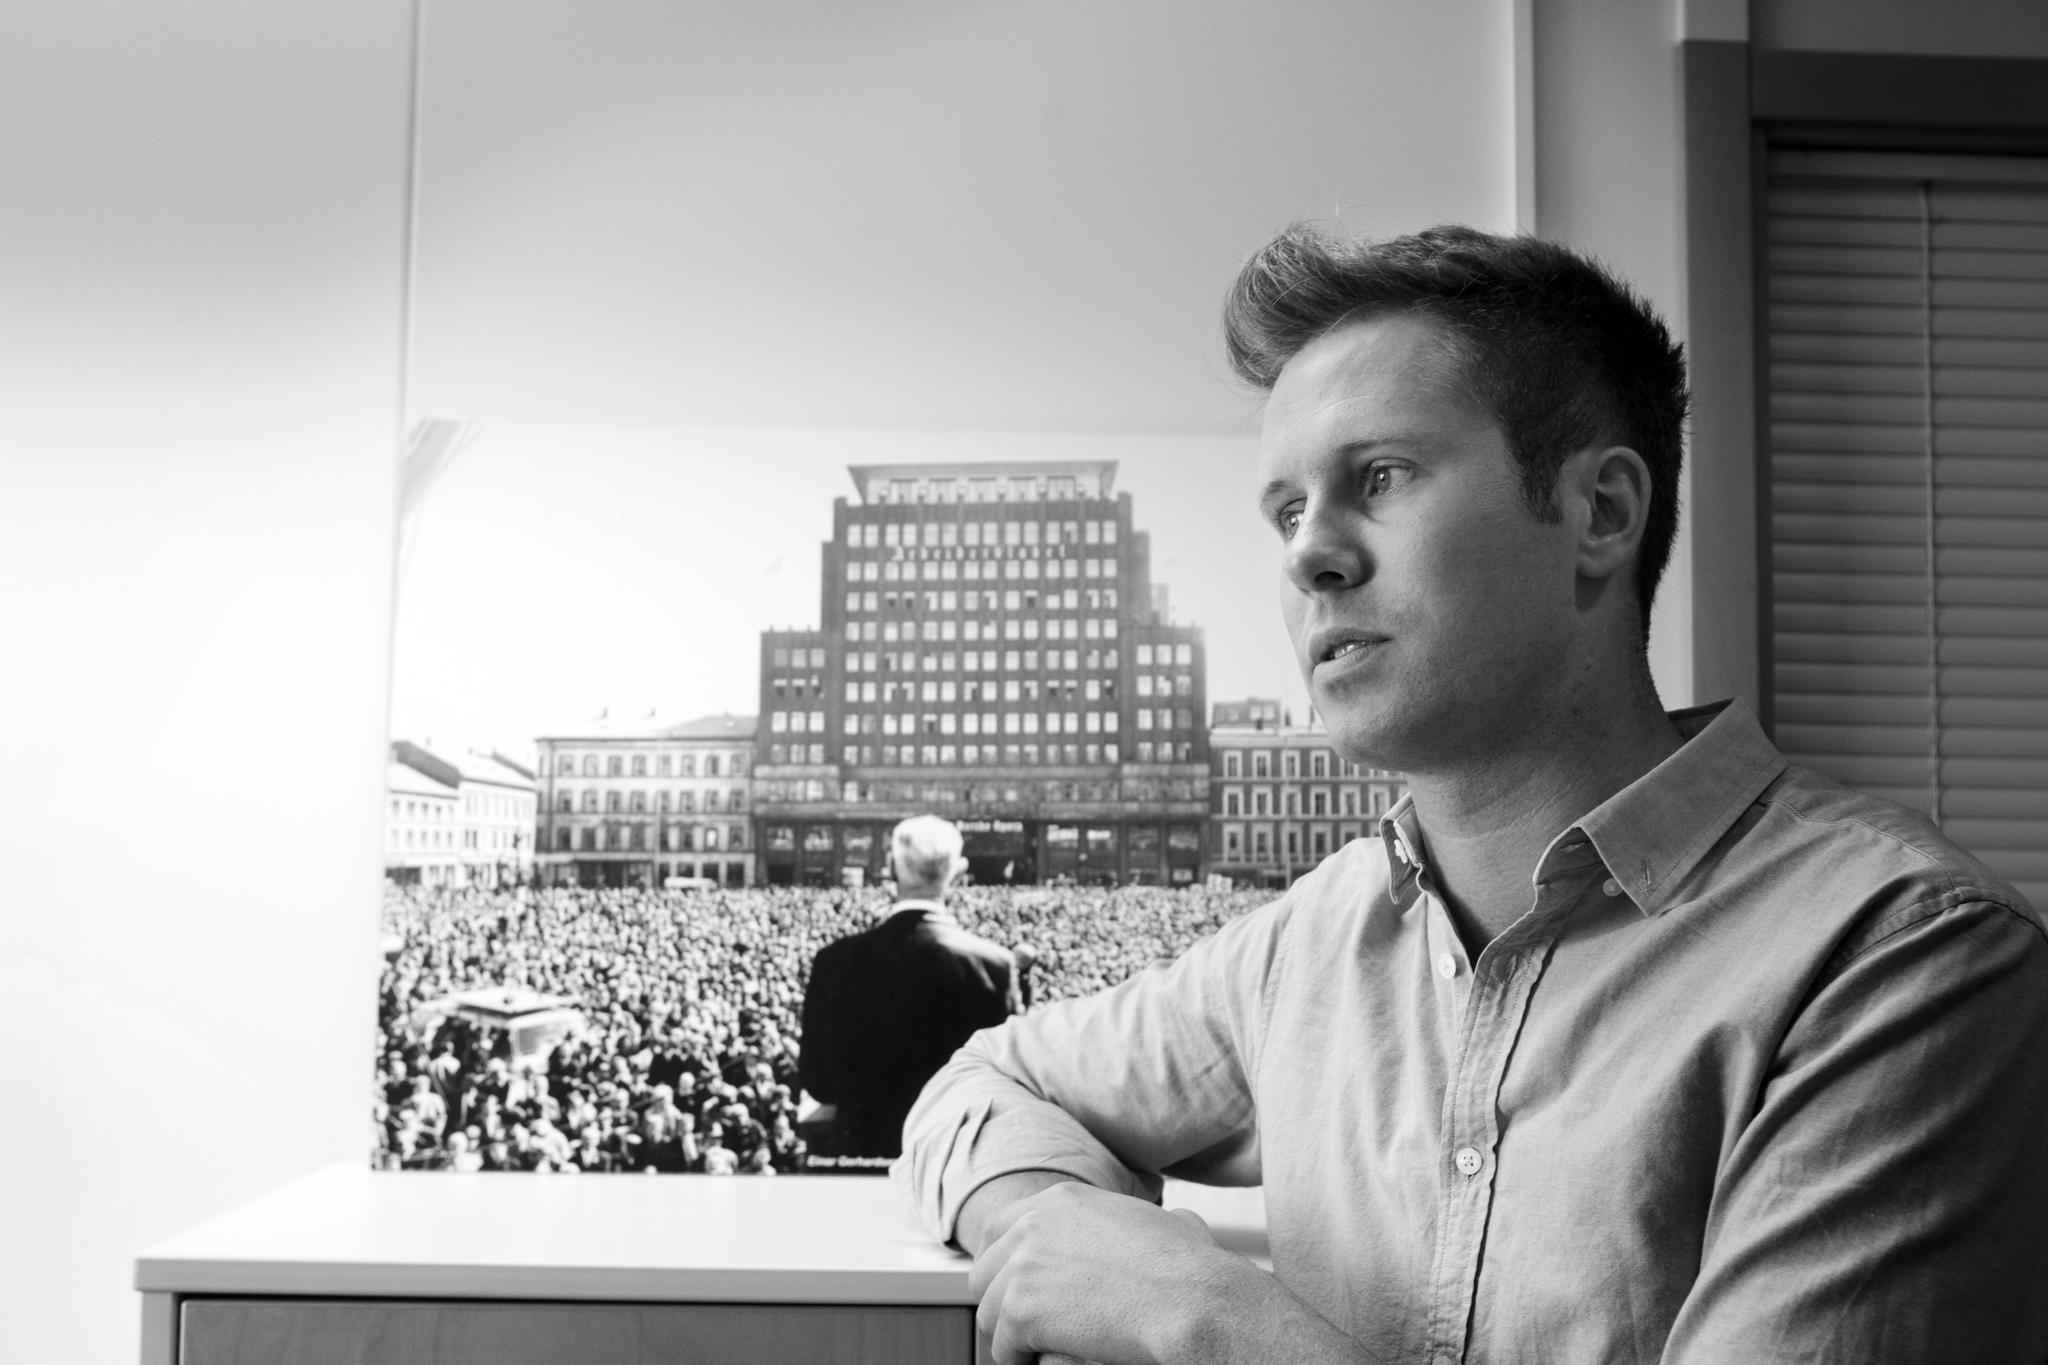 AUF-leder Eskil Pedersen tilbake på kontoret på Youngstorget høsten 2011. Den offentlige debatten etter terroren ble påfallende raskt preget av en mistanke mot AUF-erne, skriver Snorre Valen.